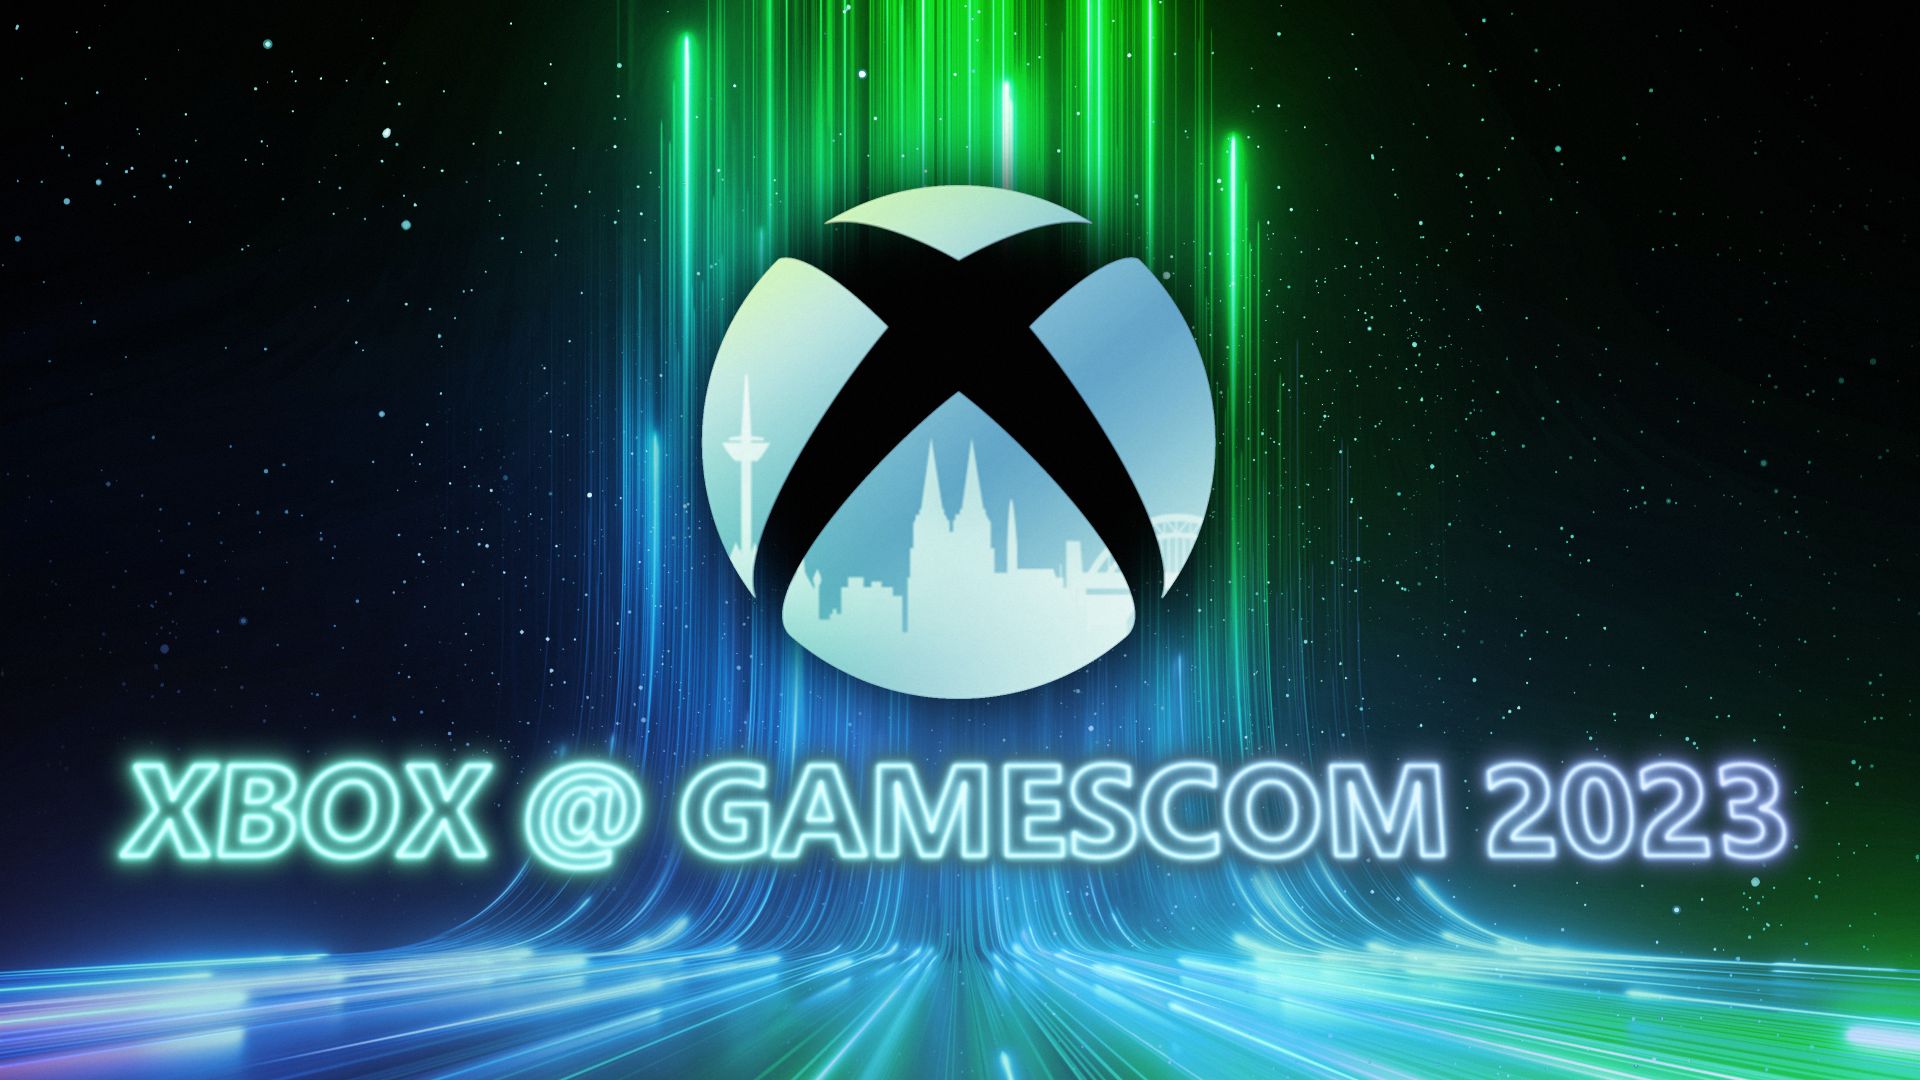 Xbox @ Gamescom 2023 Hero Asset